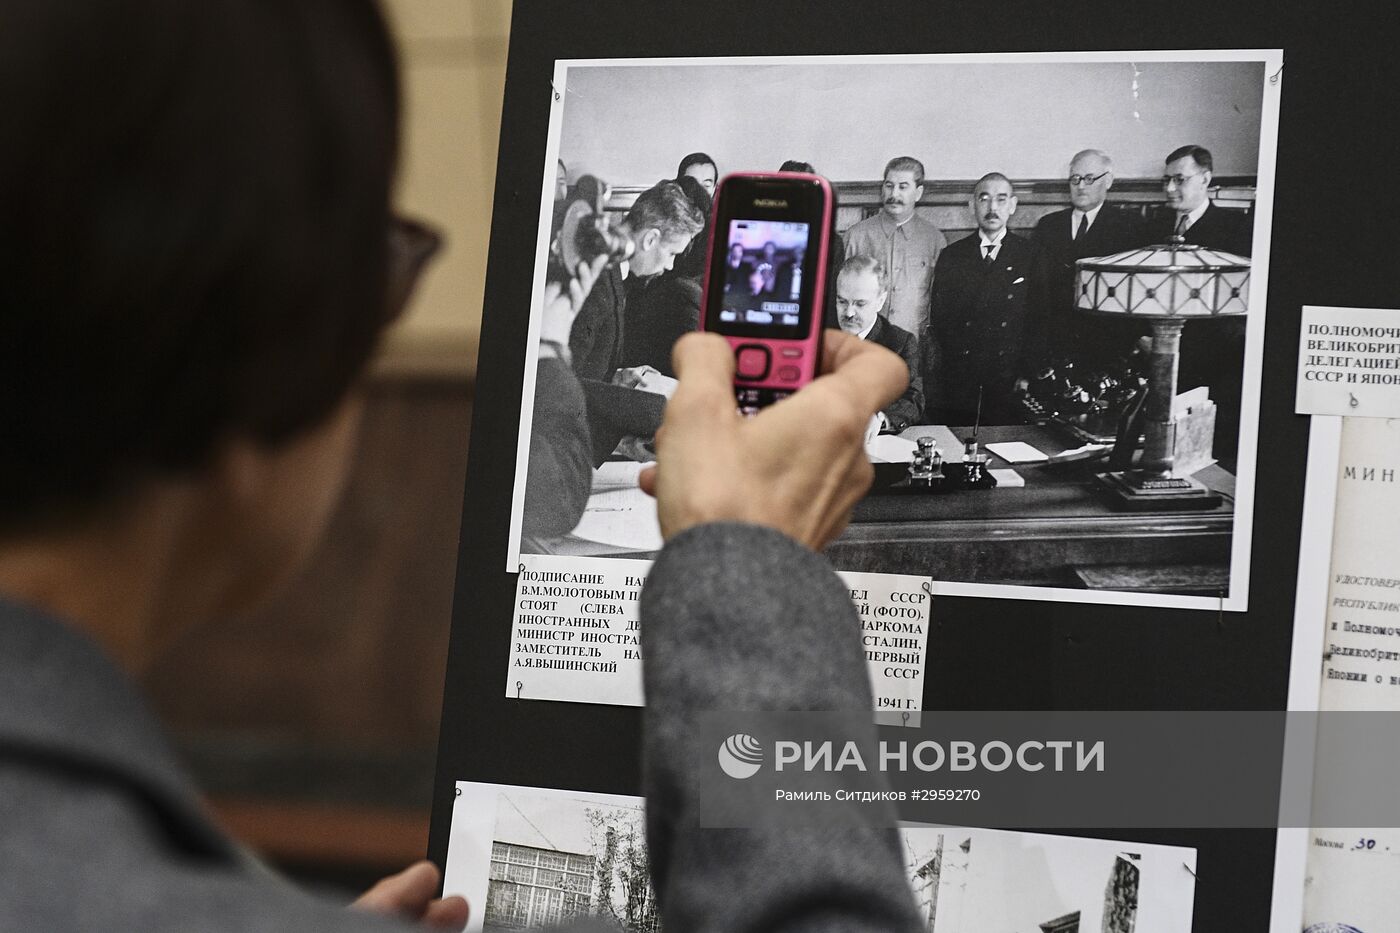 Открытие выставки по случаю 60-летия установления дипотношений между Россией (СССР) и Японией